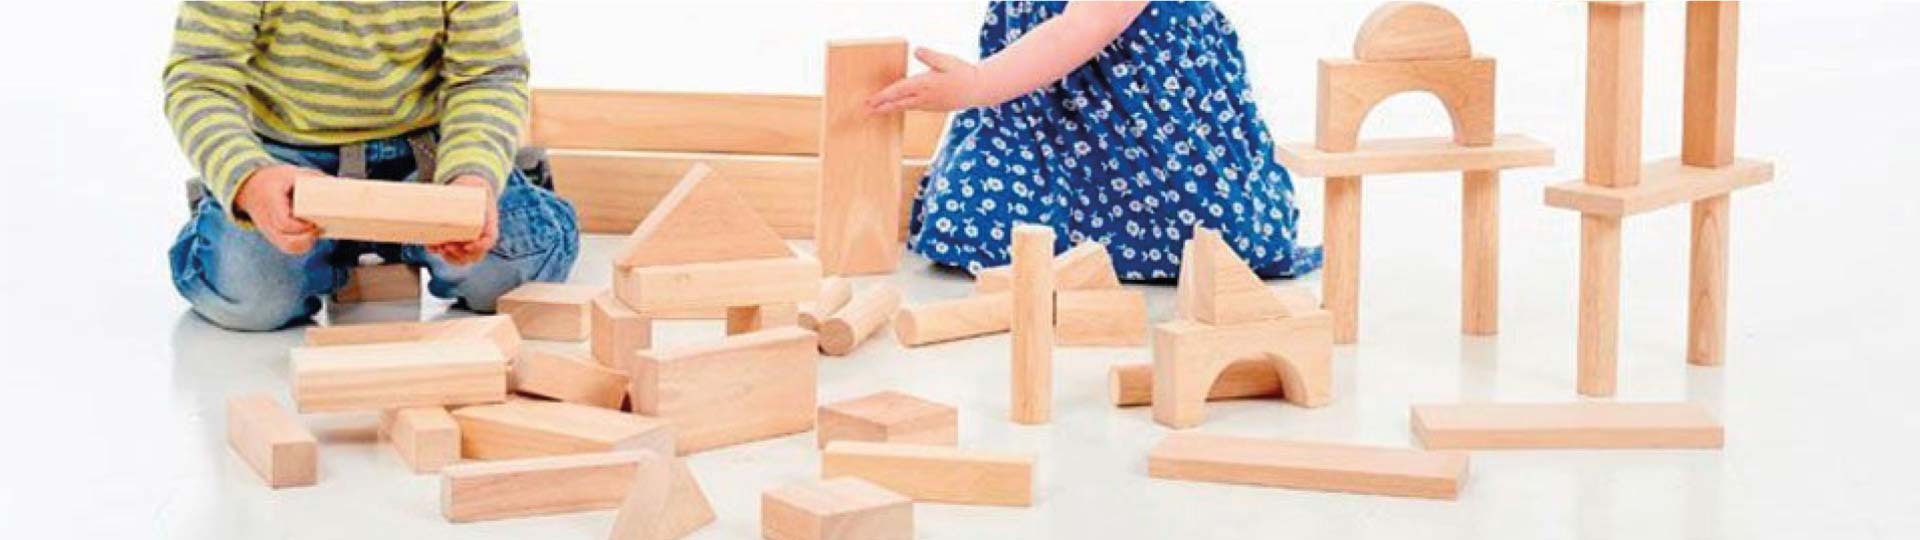 Juegos de construccion de madera